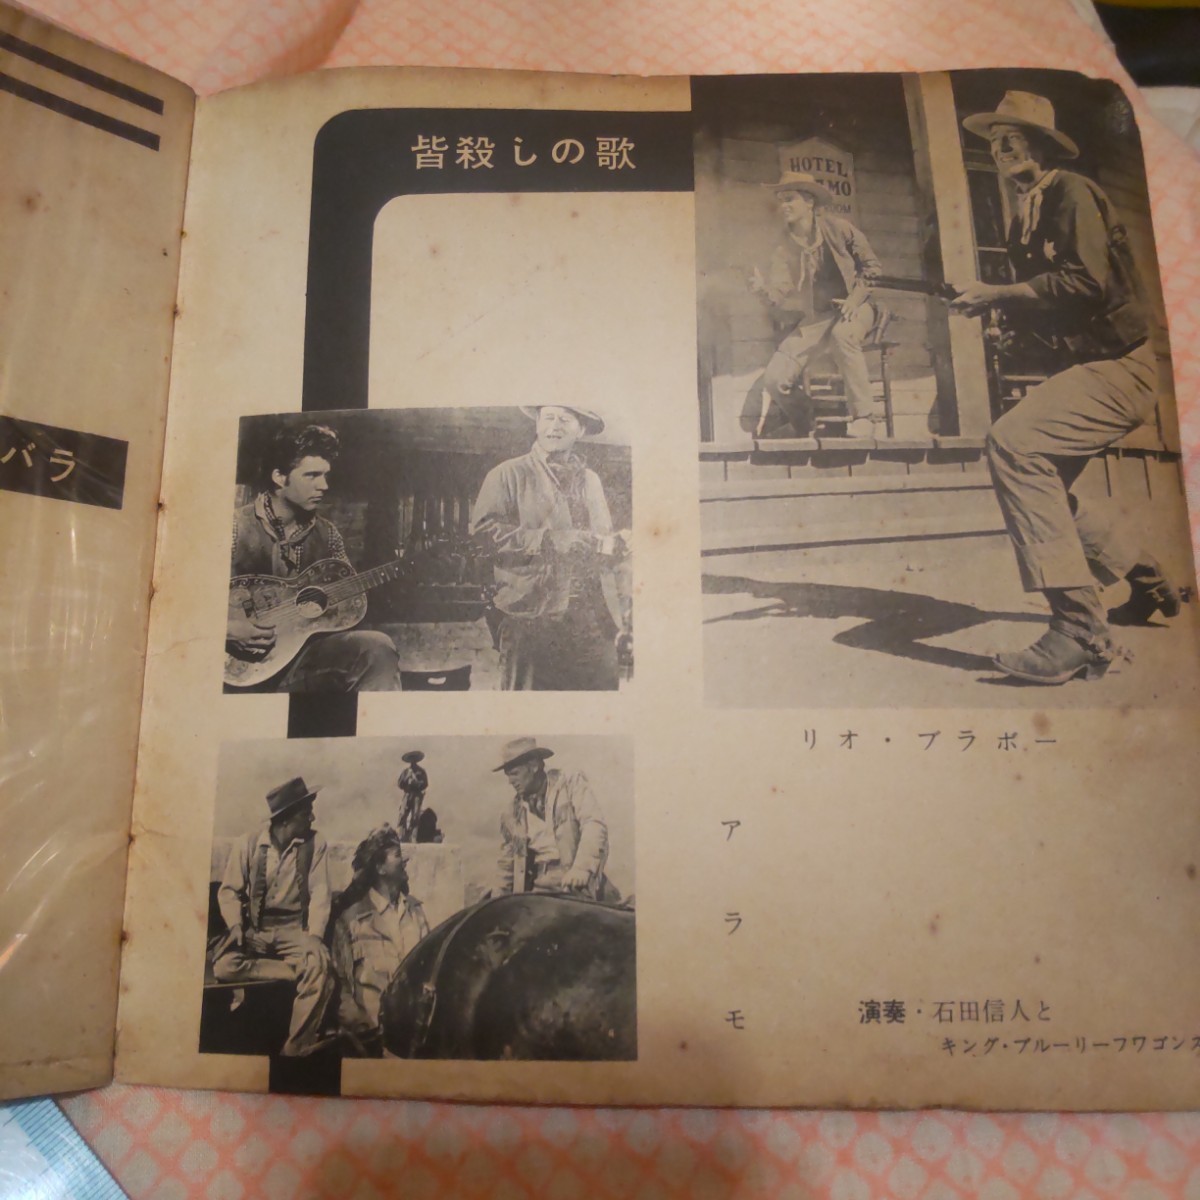  retro запись брошюра только Western low hyde rio * Bravo ... 7 человек включение в покупку не возможно Showa Retro 